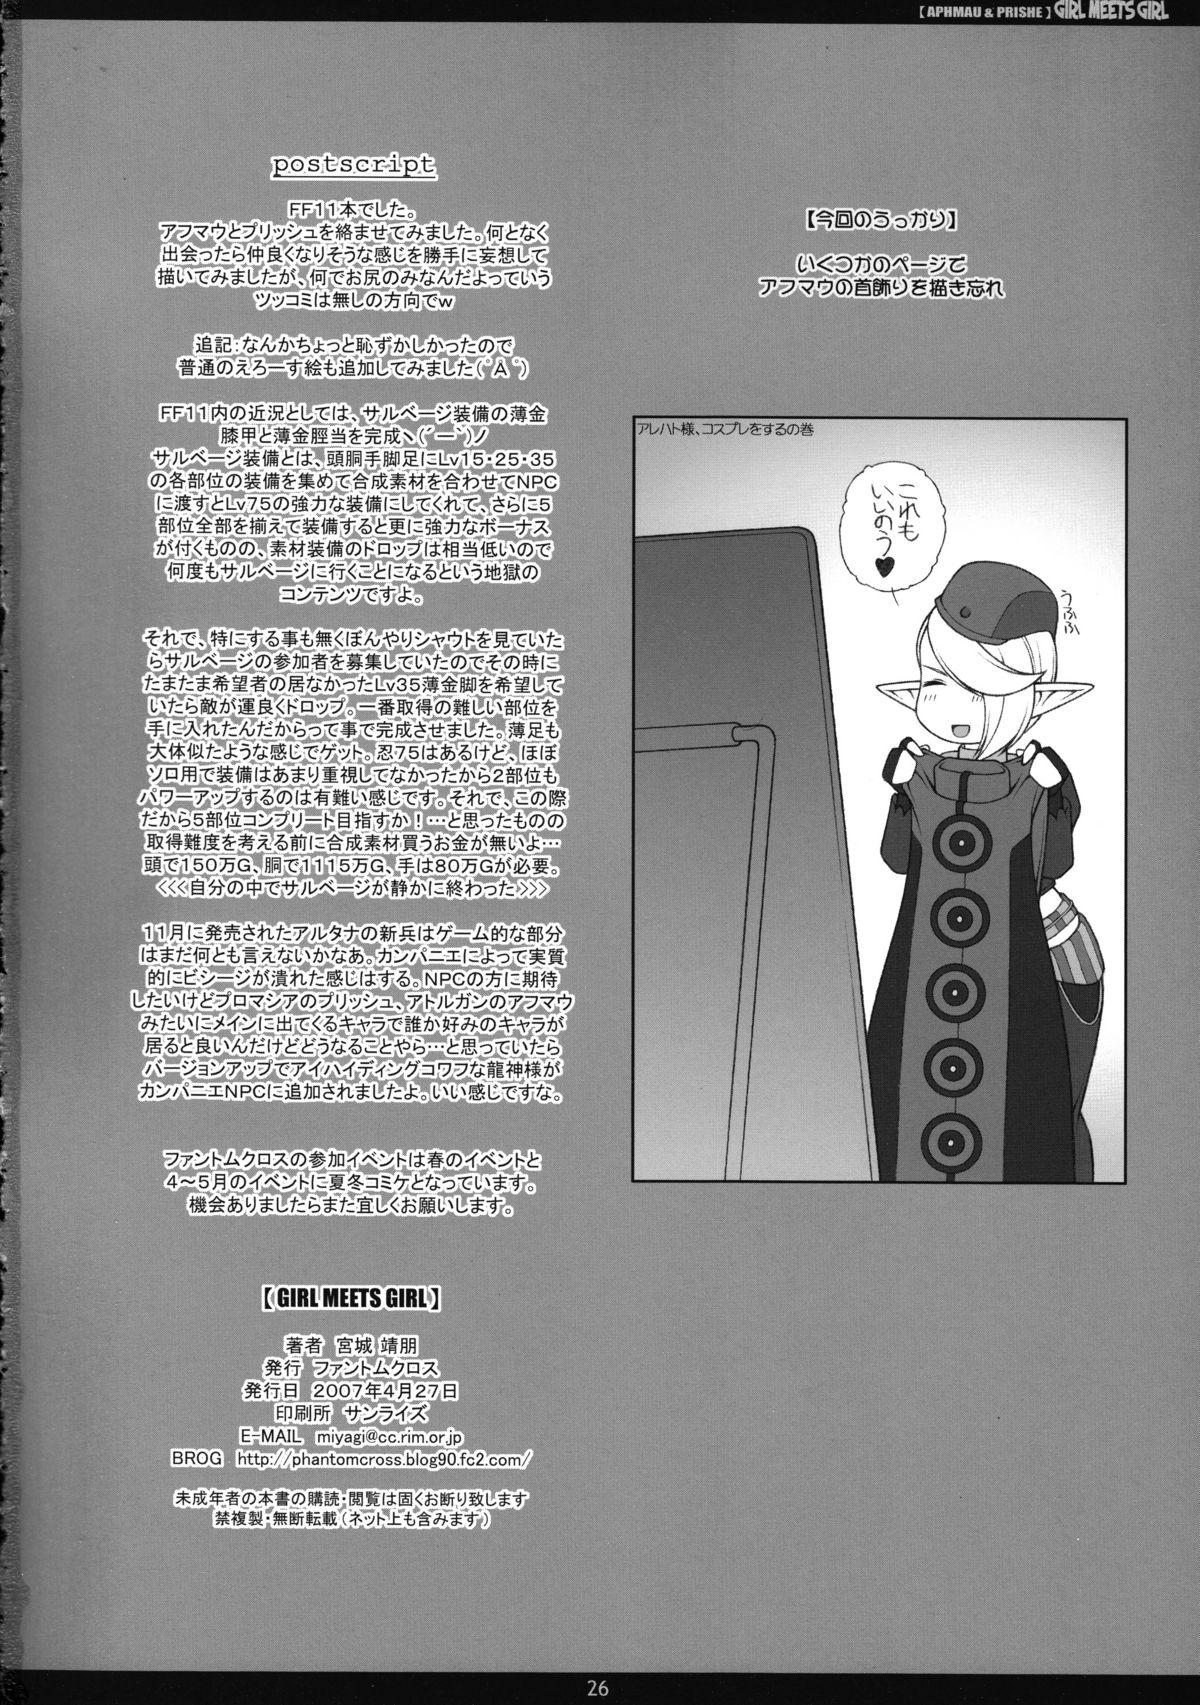 Guyonshemale GIRL MEETS GIRL - Final fantasy xi Clitoris - Page 25